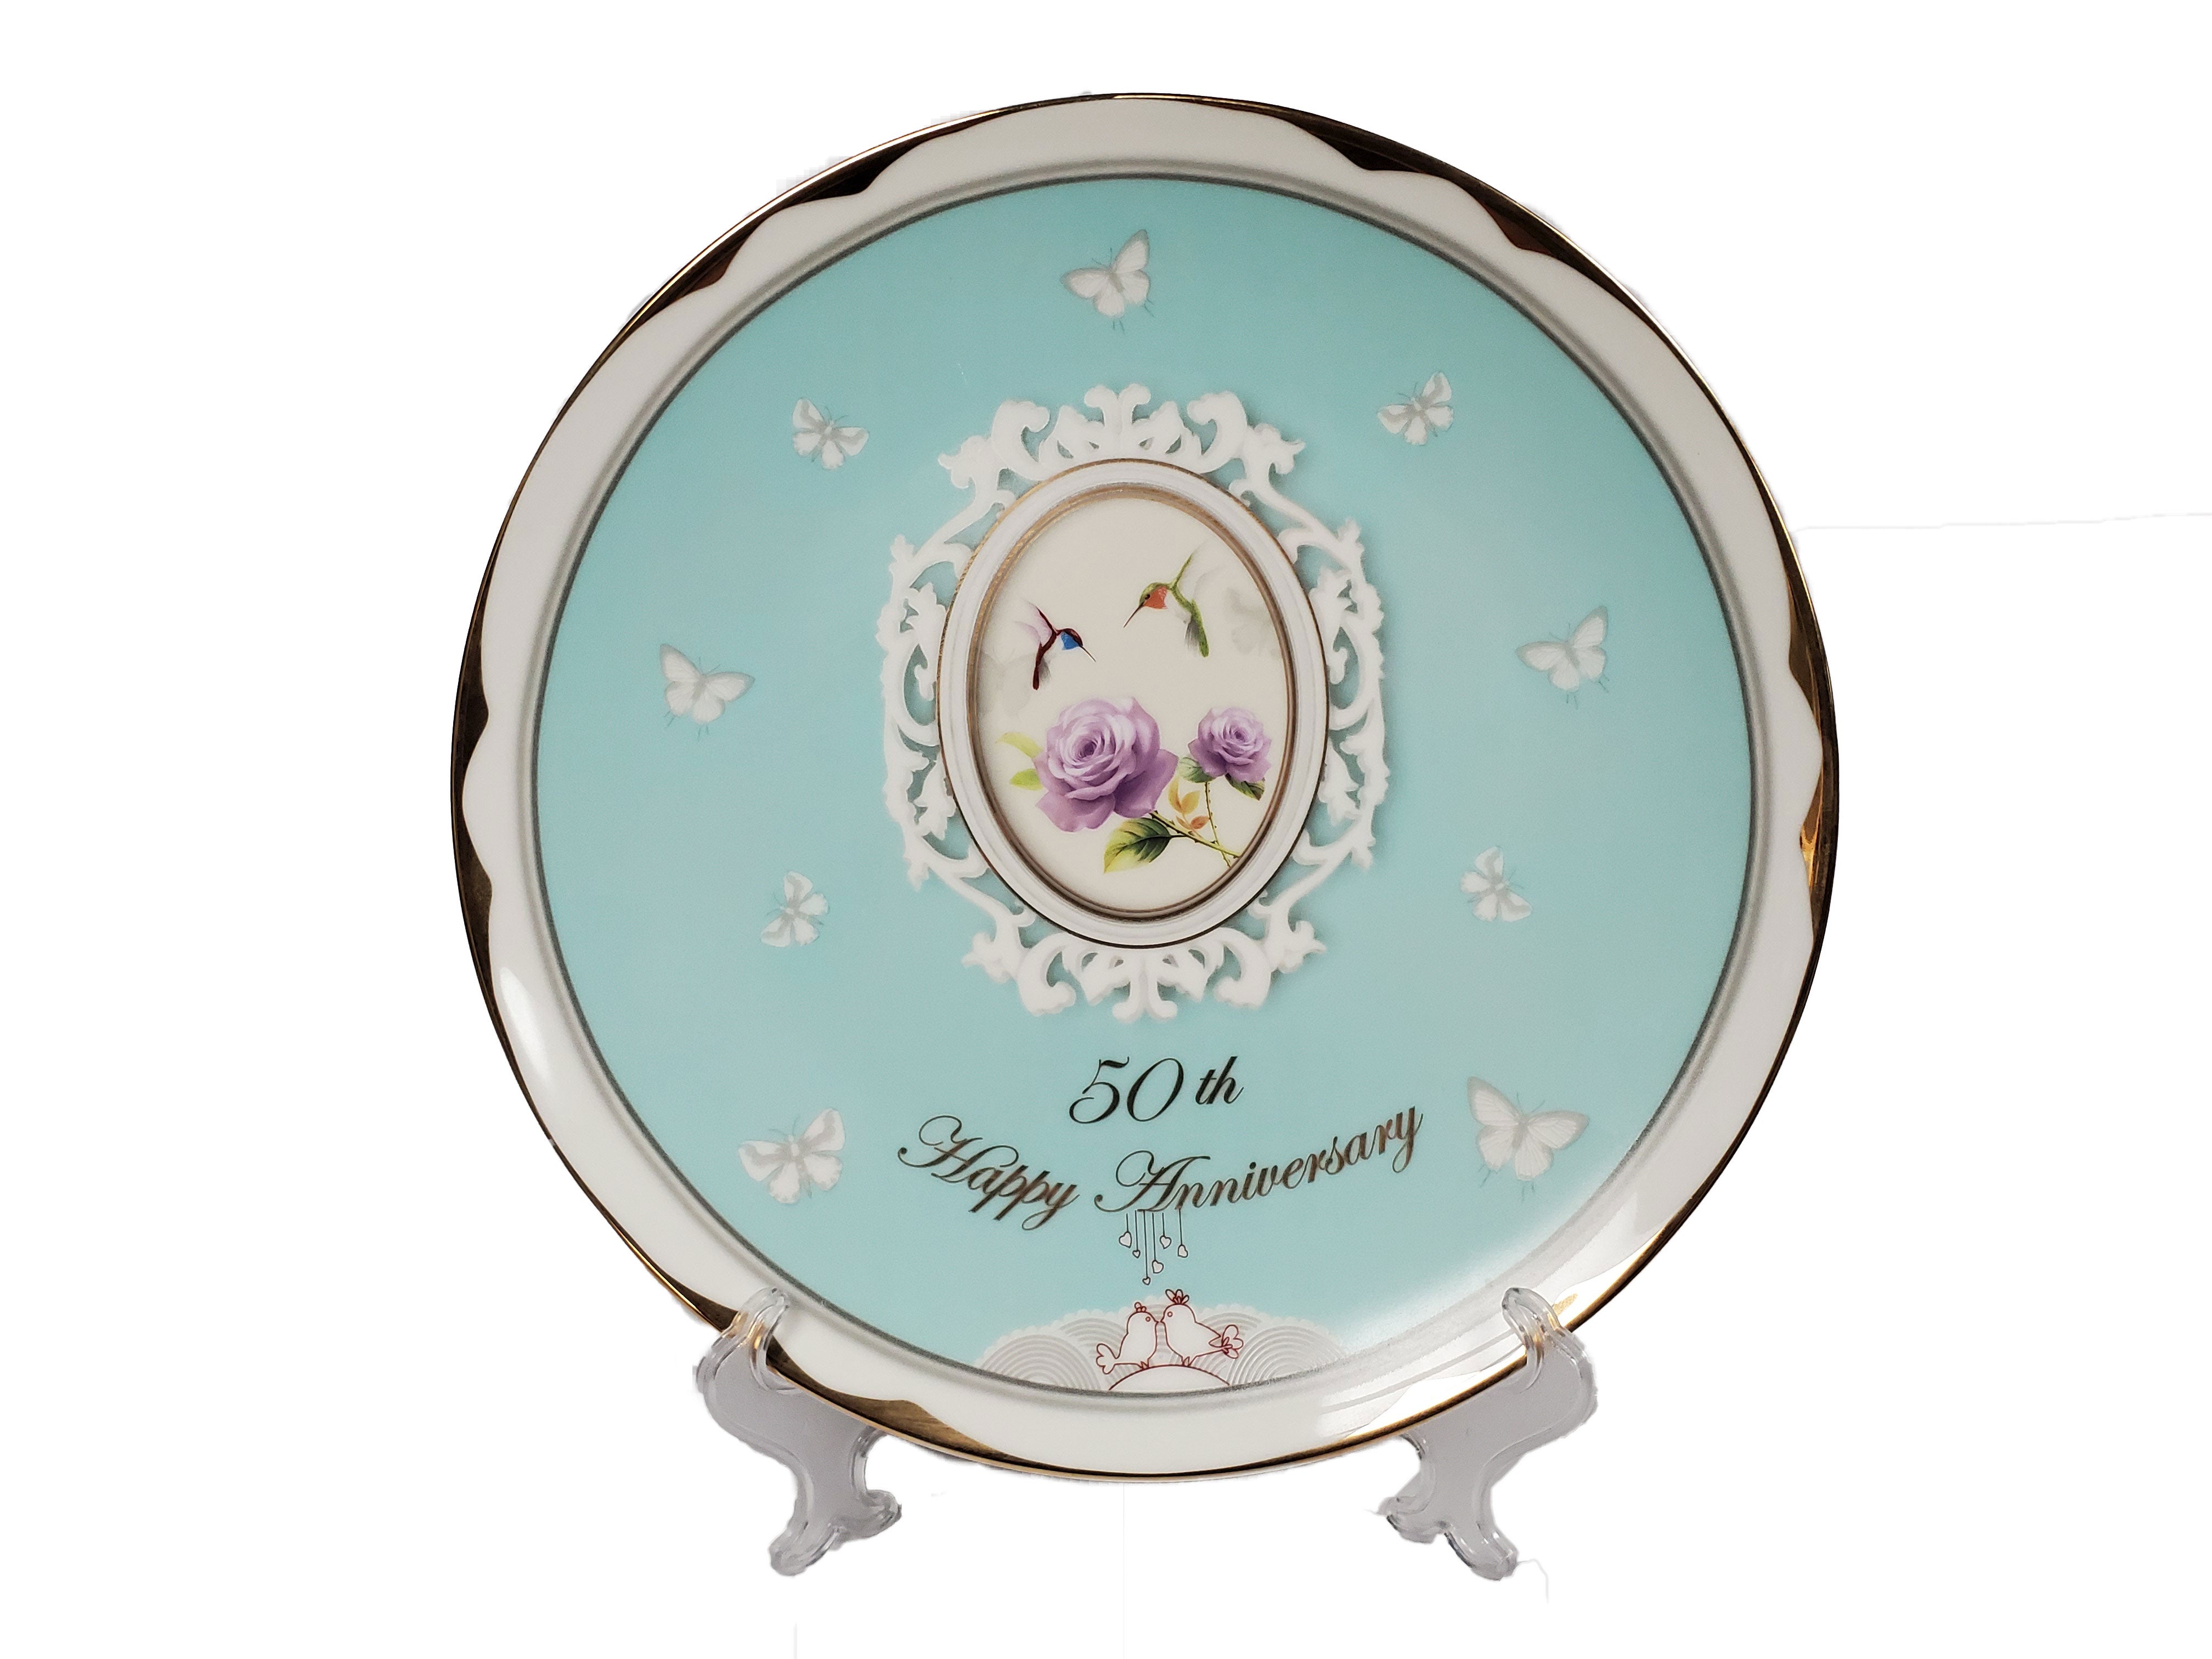 50th Anniversary Platter bone china 12"diameter - Royal Gift